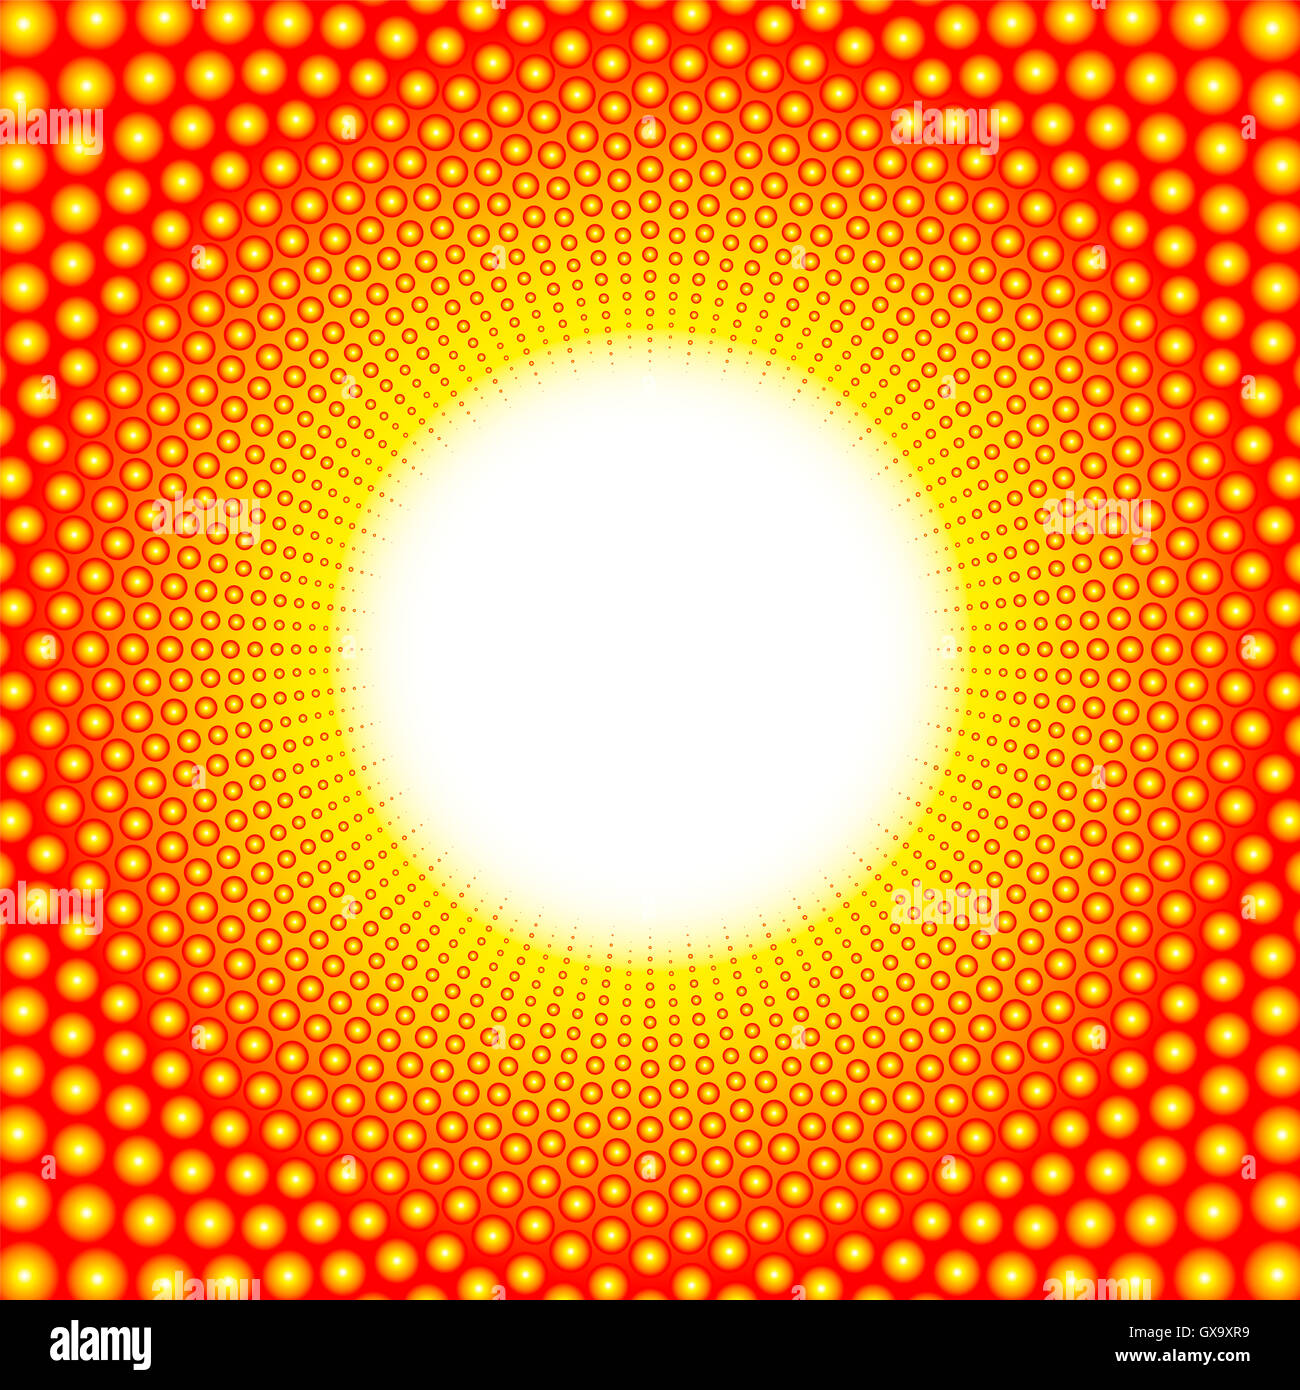 White Heat Muster mit lodernden Center - bestehend aus glänzenden Kugeln. Stockfoto